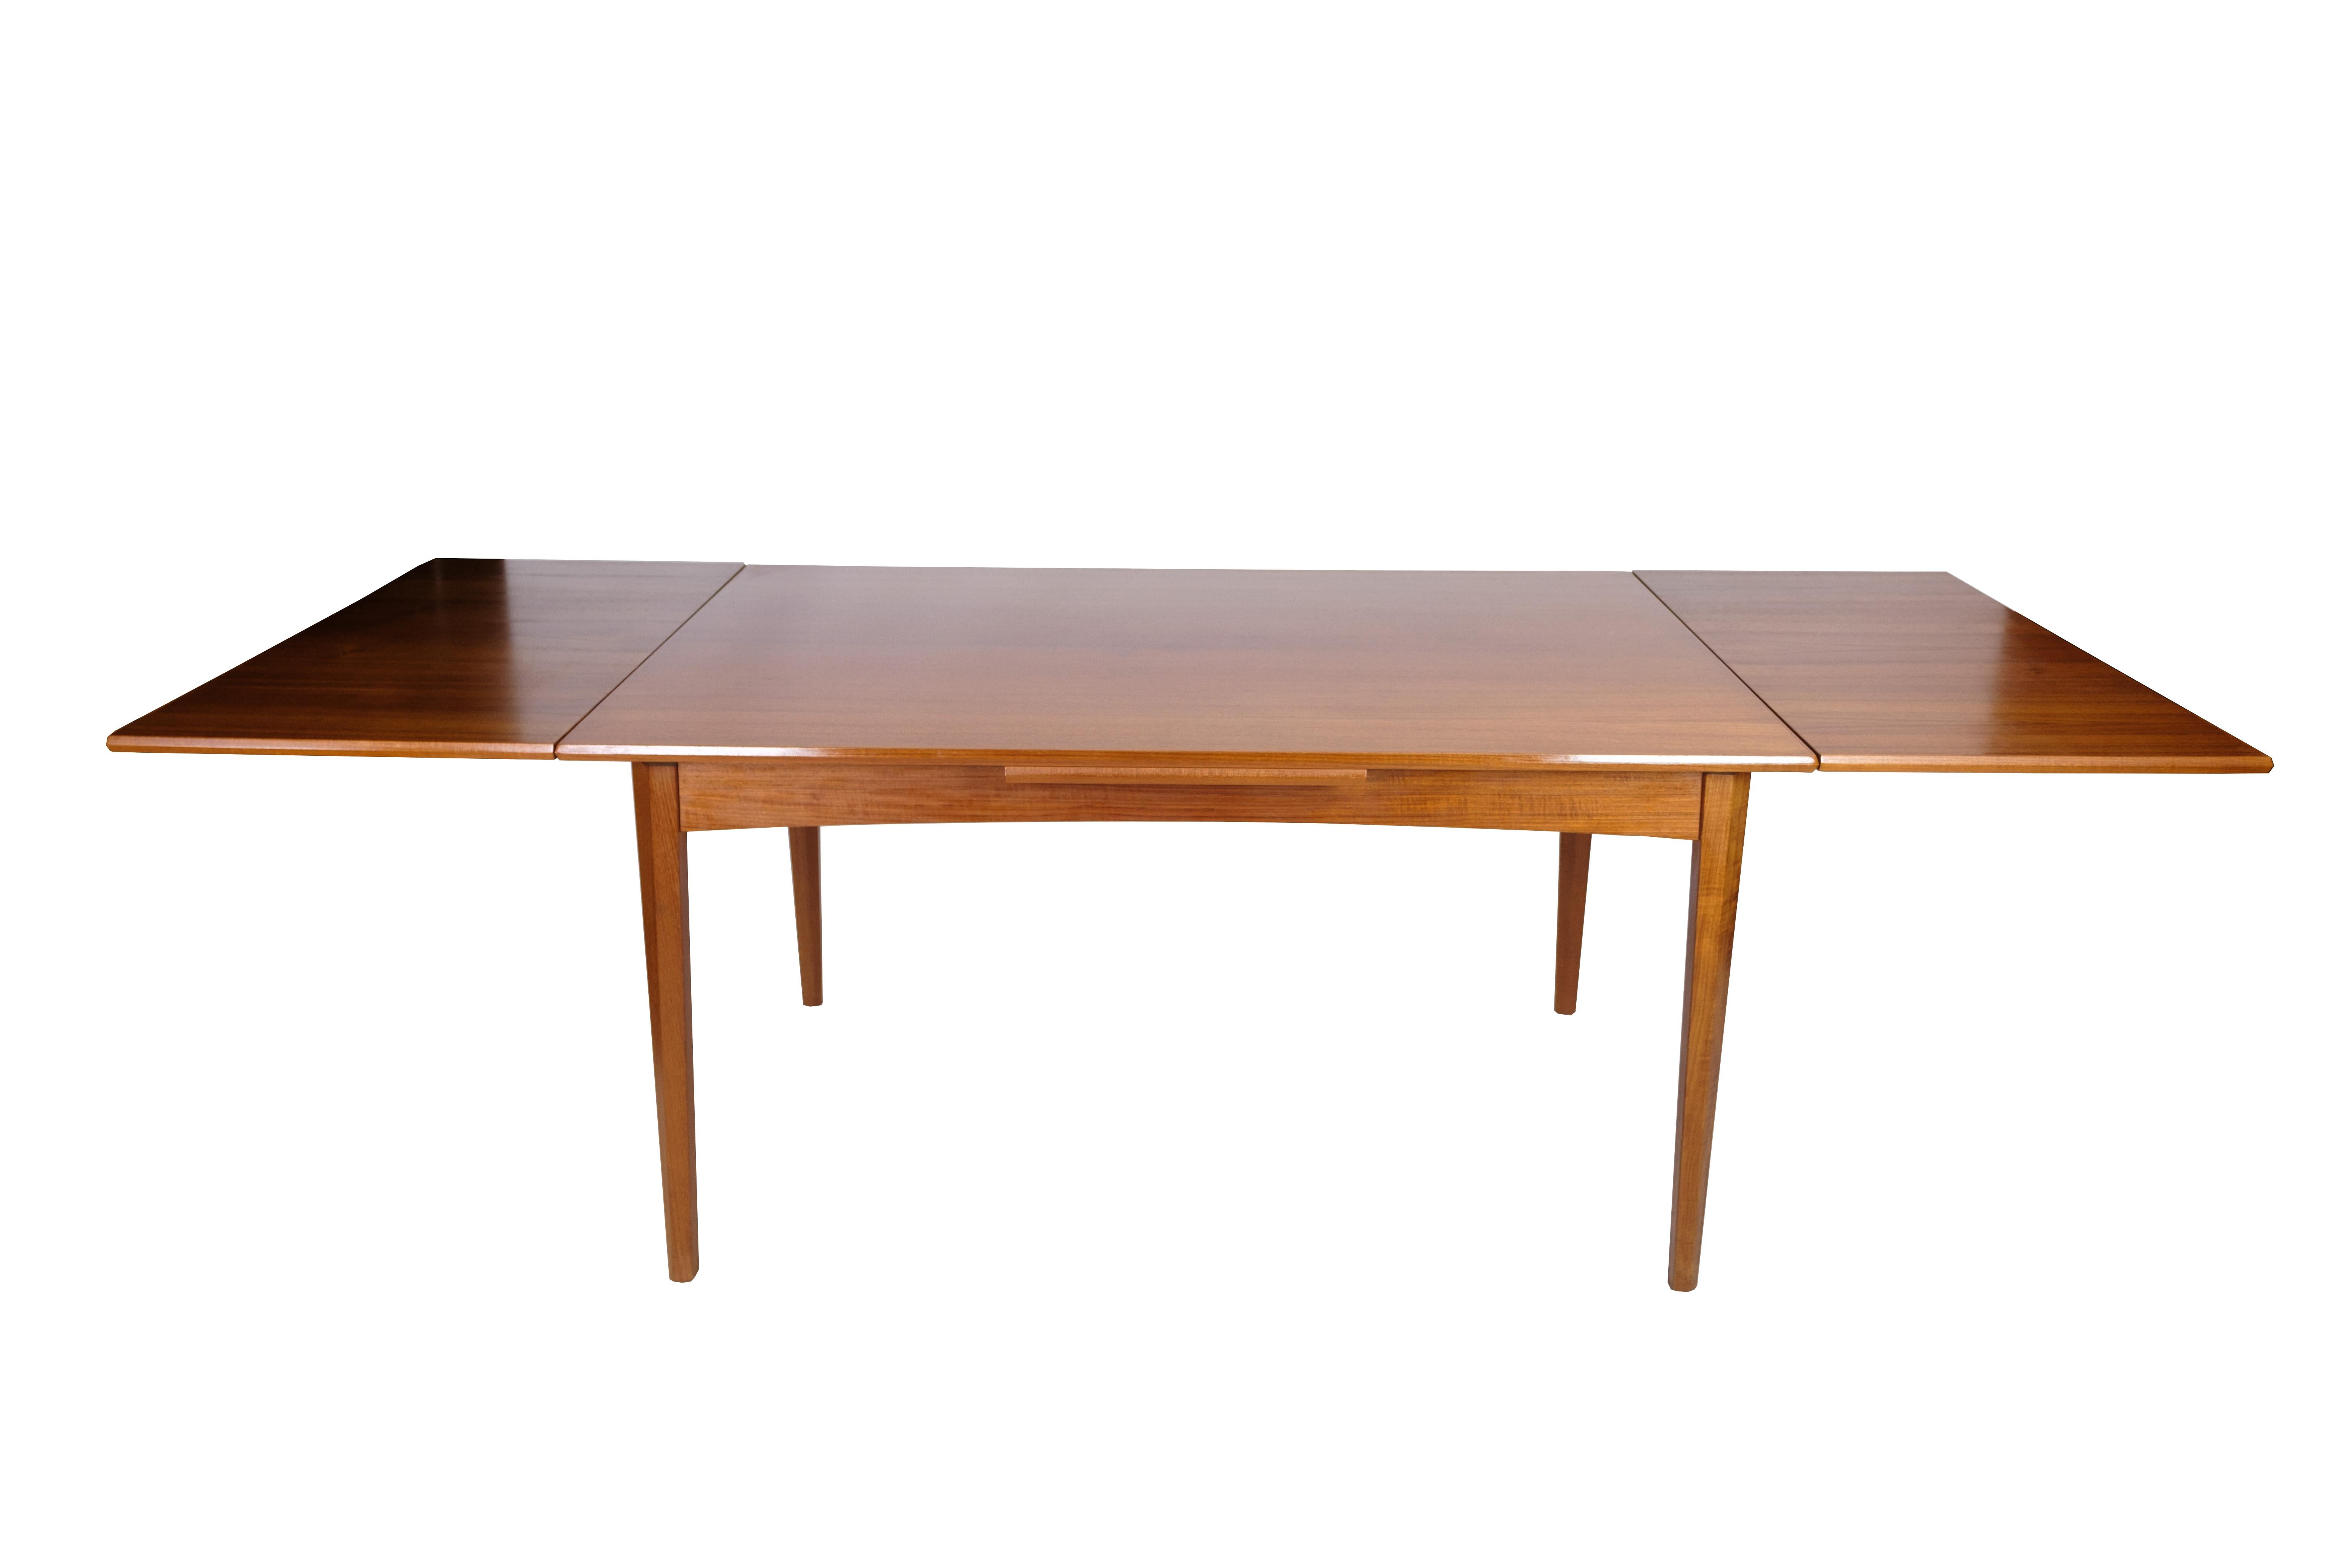 Cette table de salle à manger en teck est un meuble magnifique et fonctionnel du design danois des années 1960. La table est fabriquée en bois de teck de haute qualité, connu pour sa durabilité et sa beauté naturelle. Le design comprend une